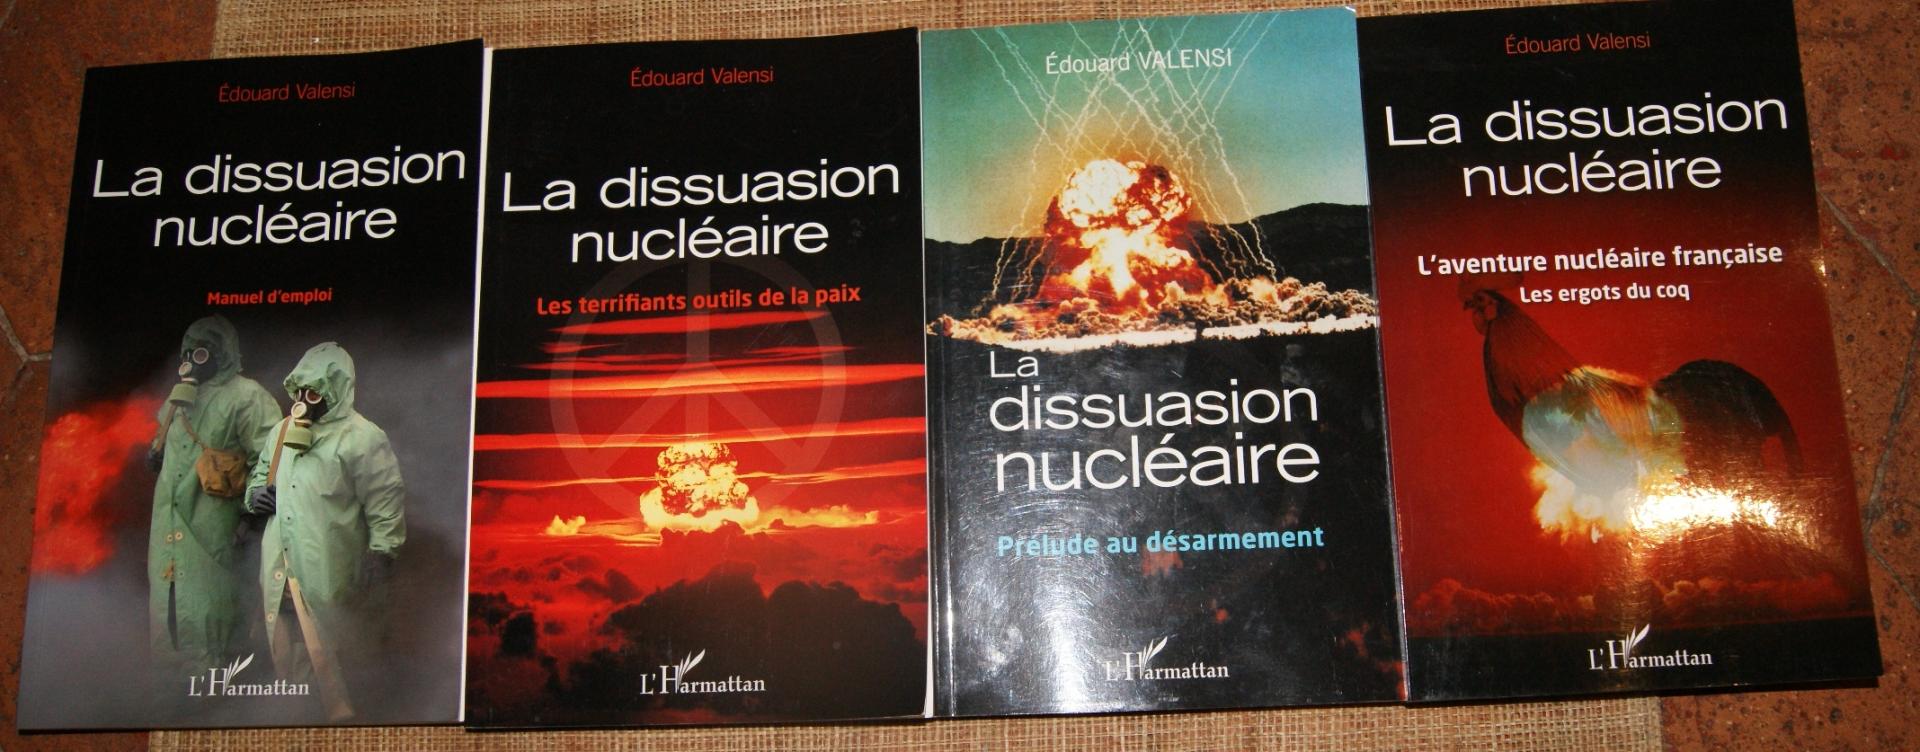 dissuasion nucléaire